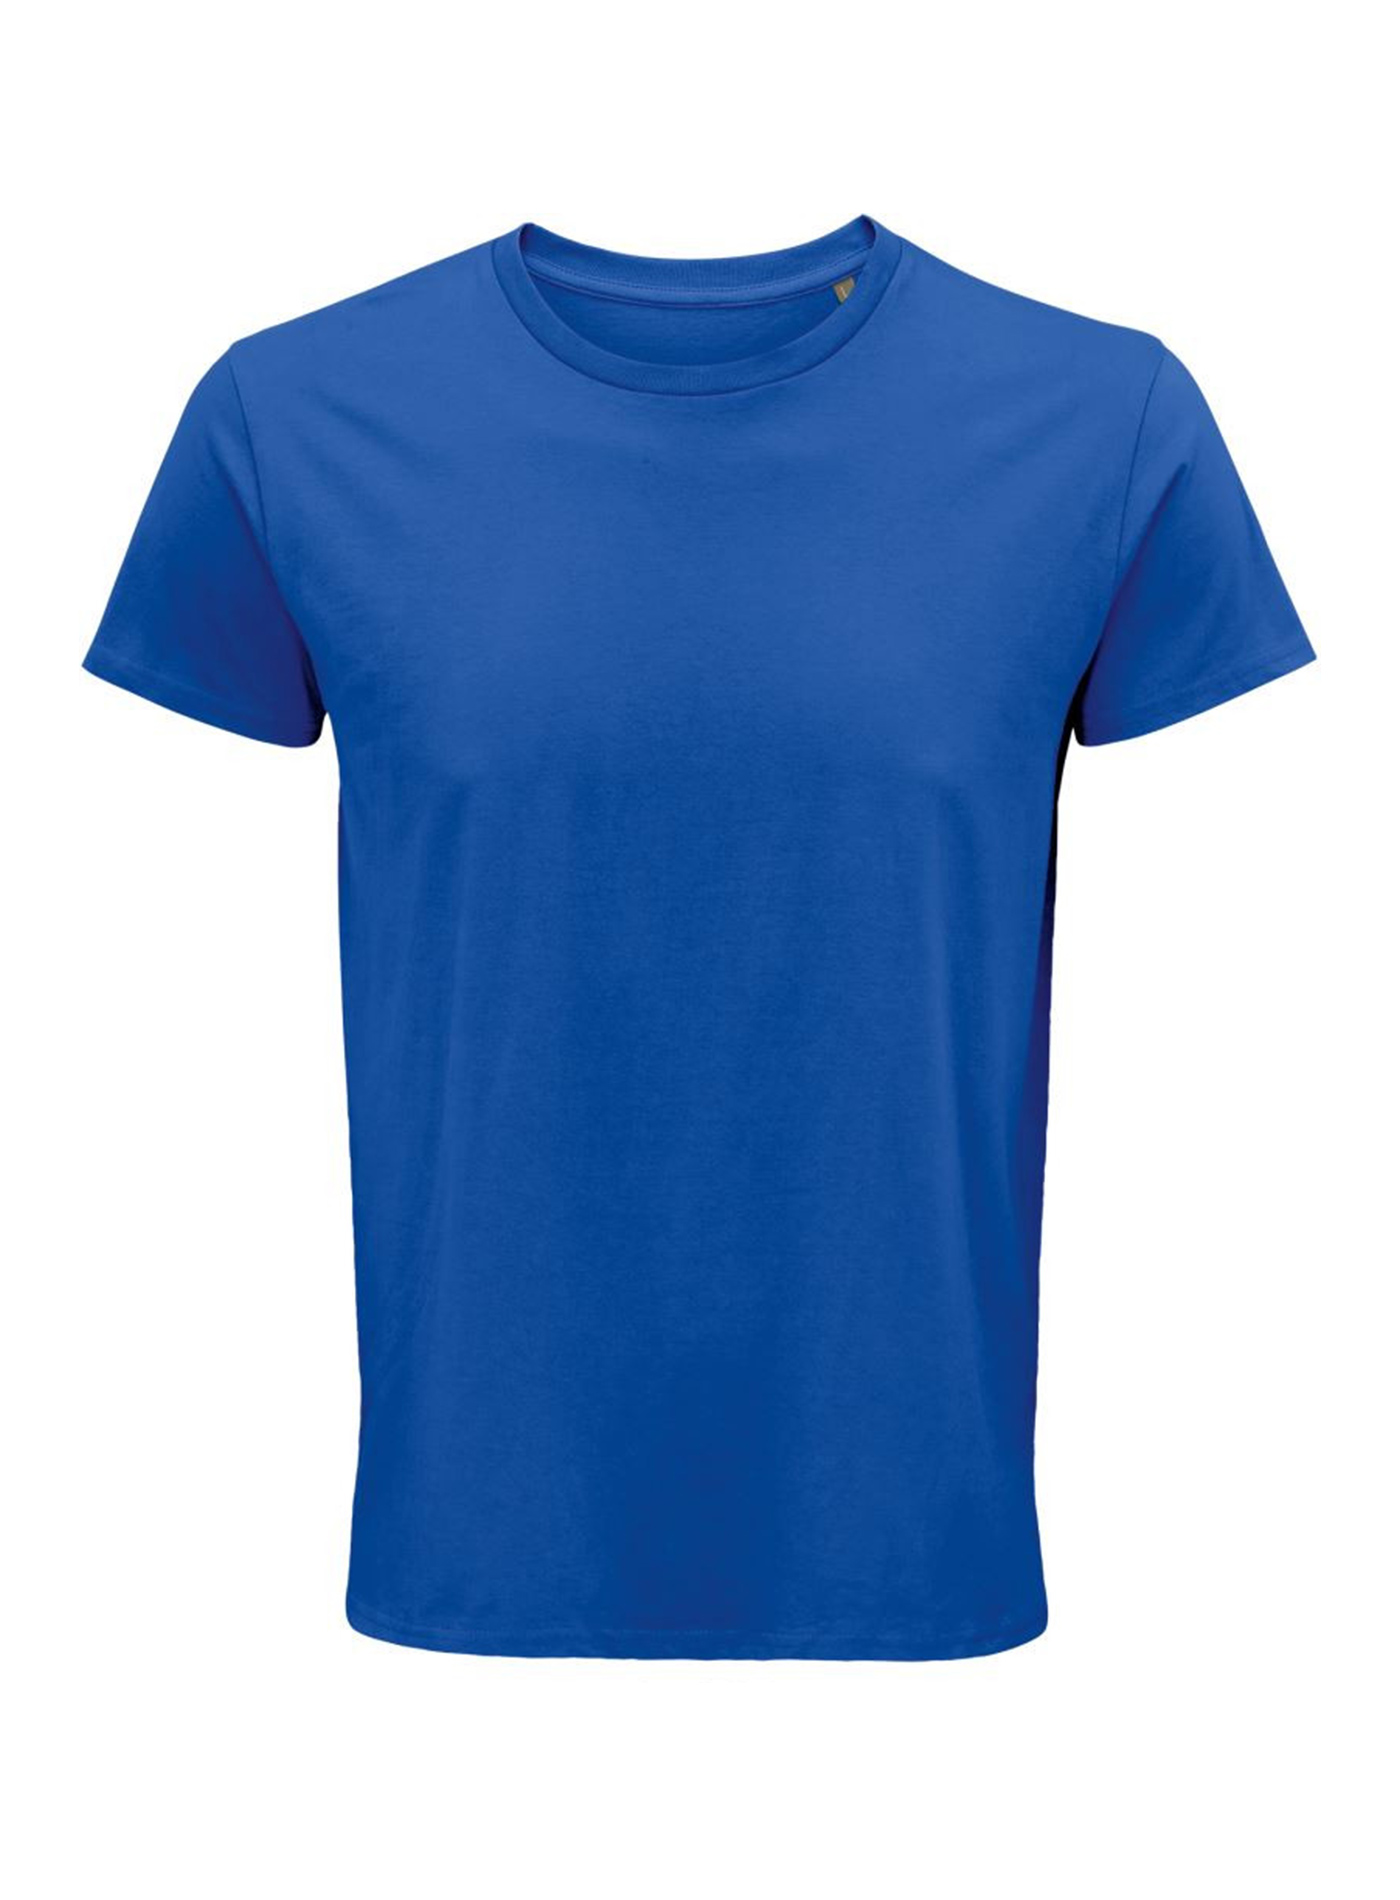 Pánské tričko SOL'S Crusader - královská modrá S